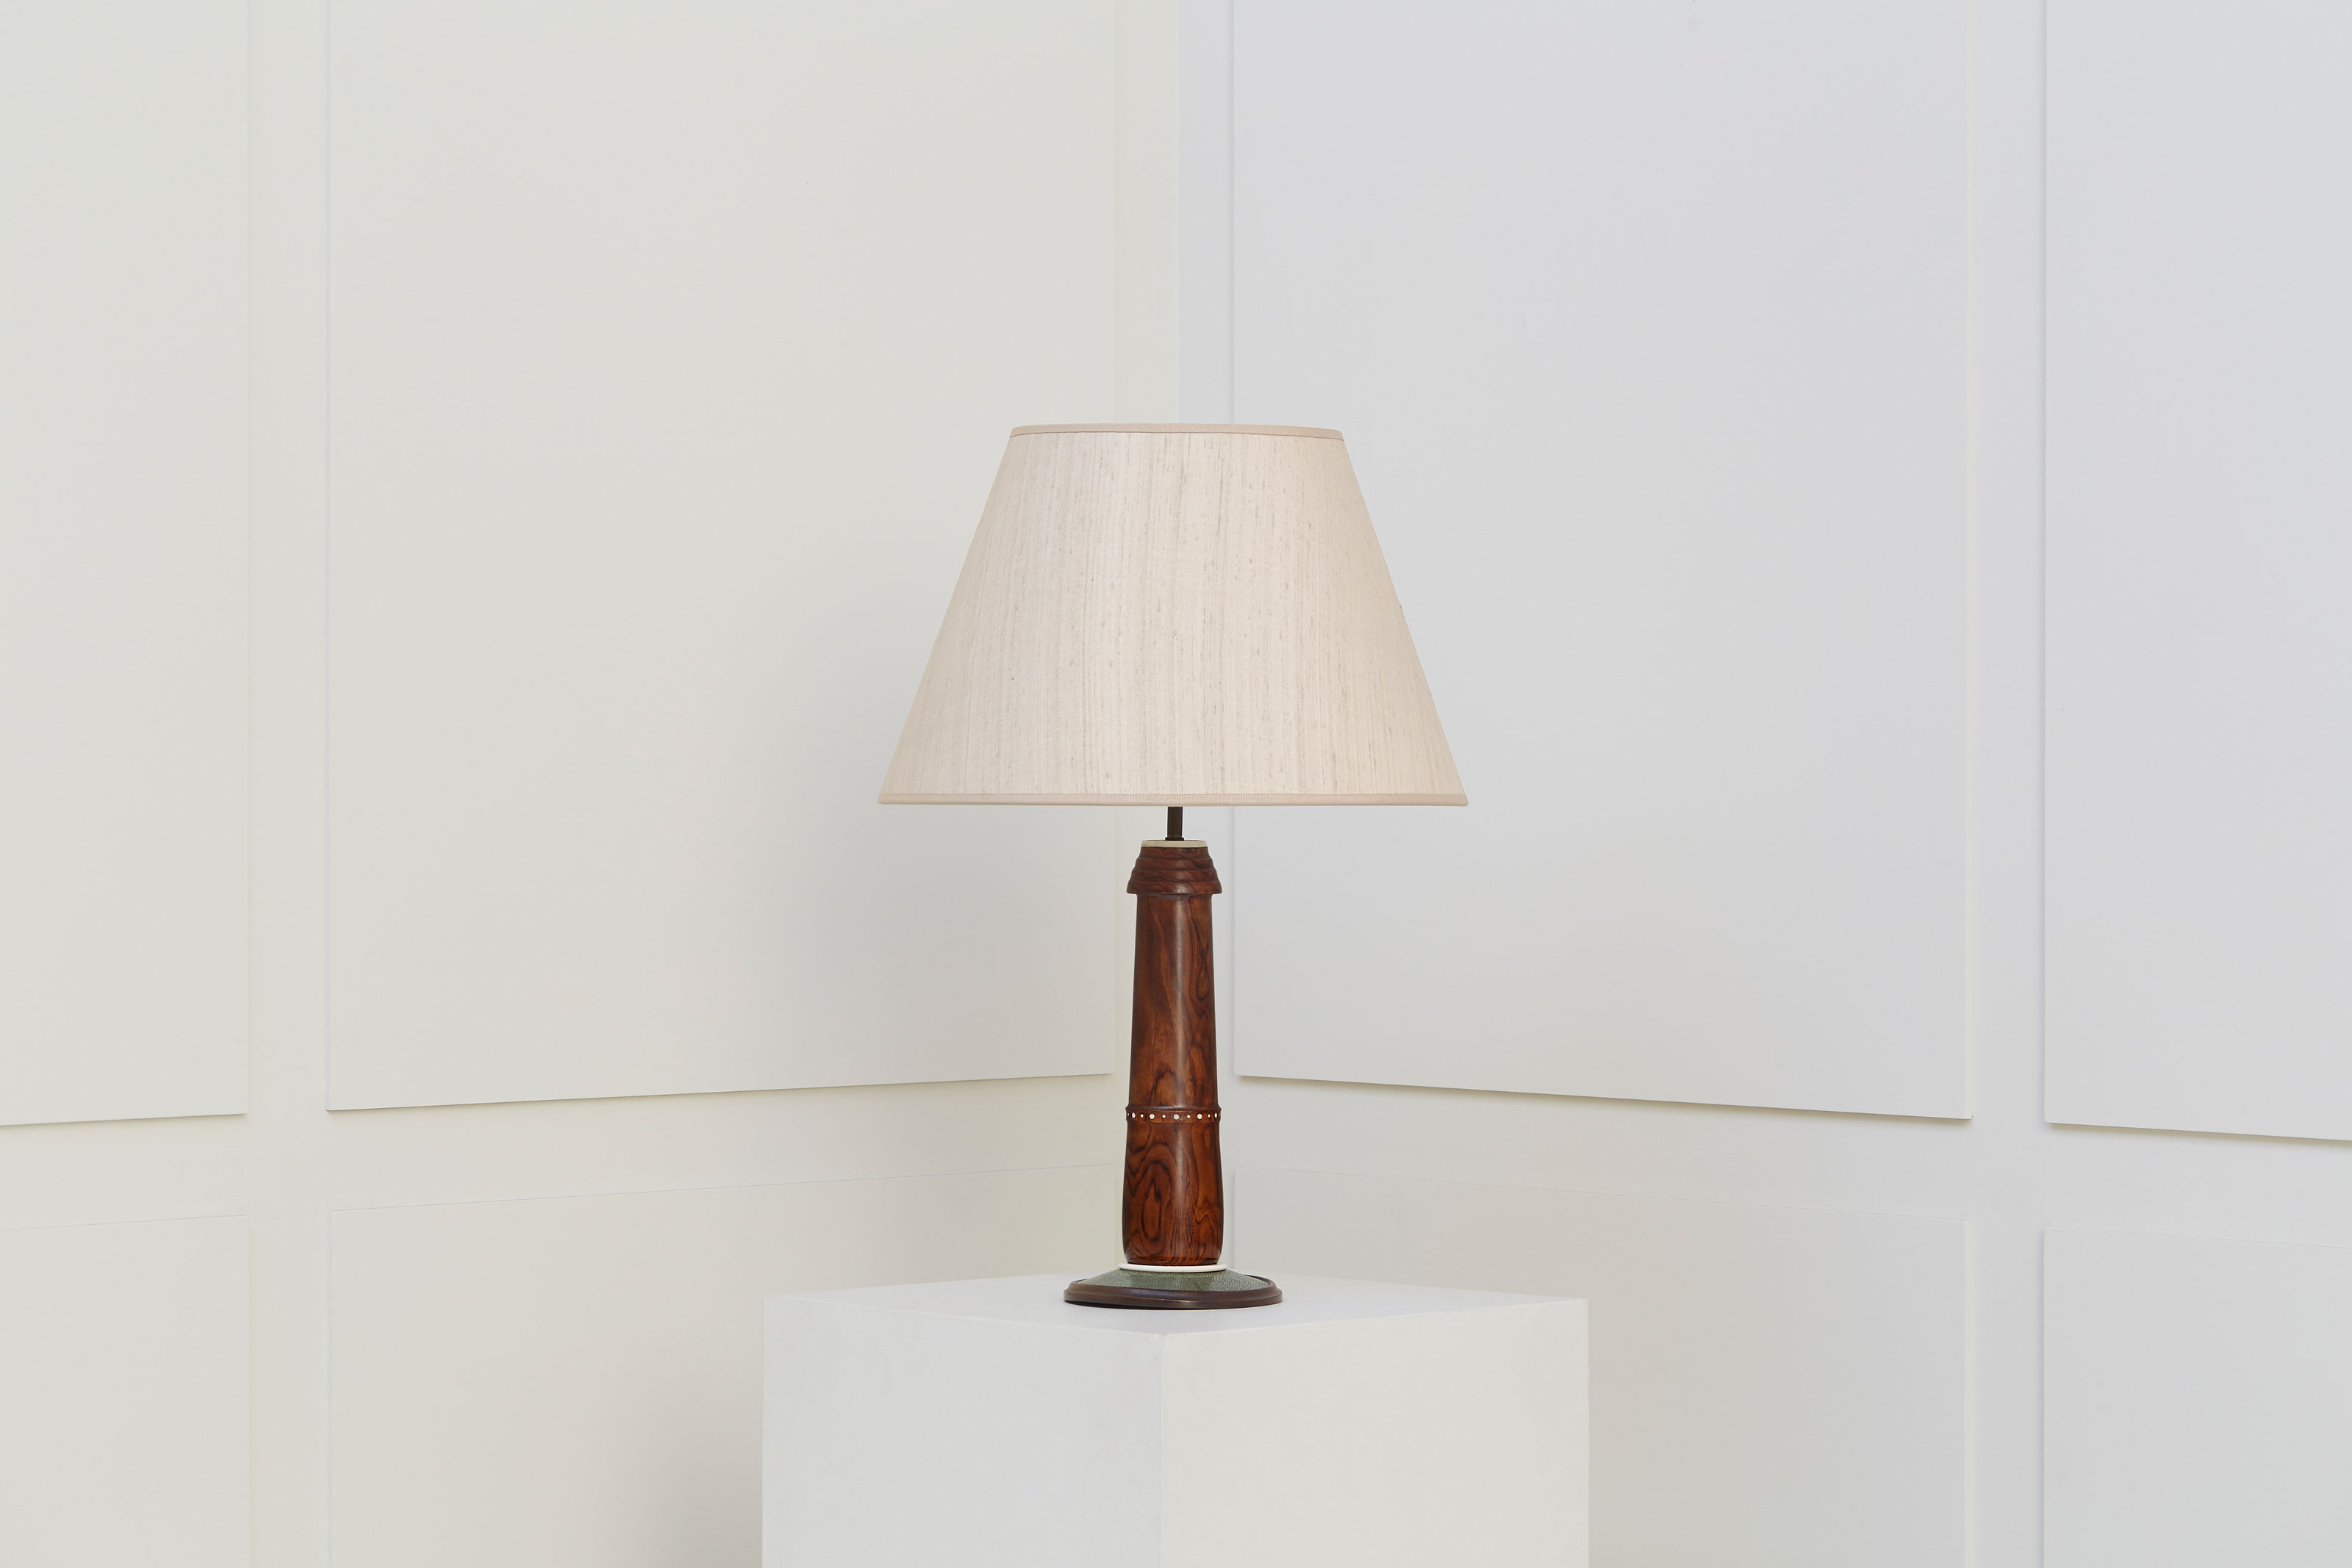 Clément Rousseau, Rare lamp, vue 01